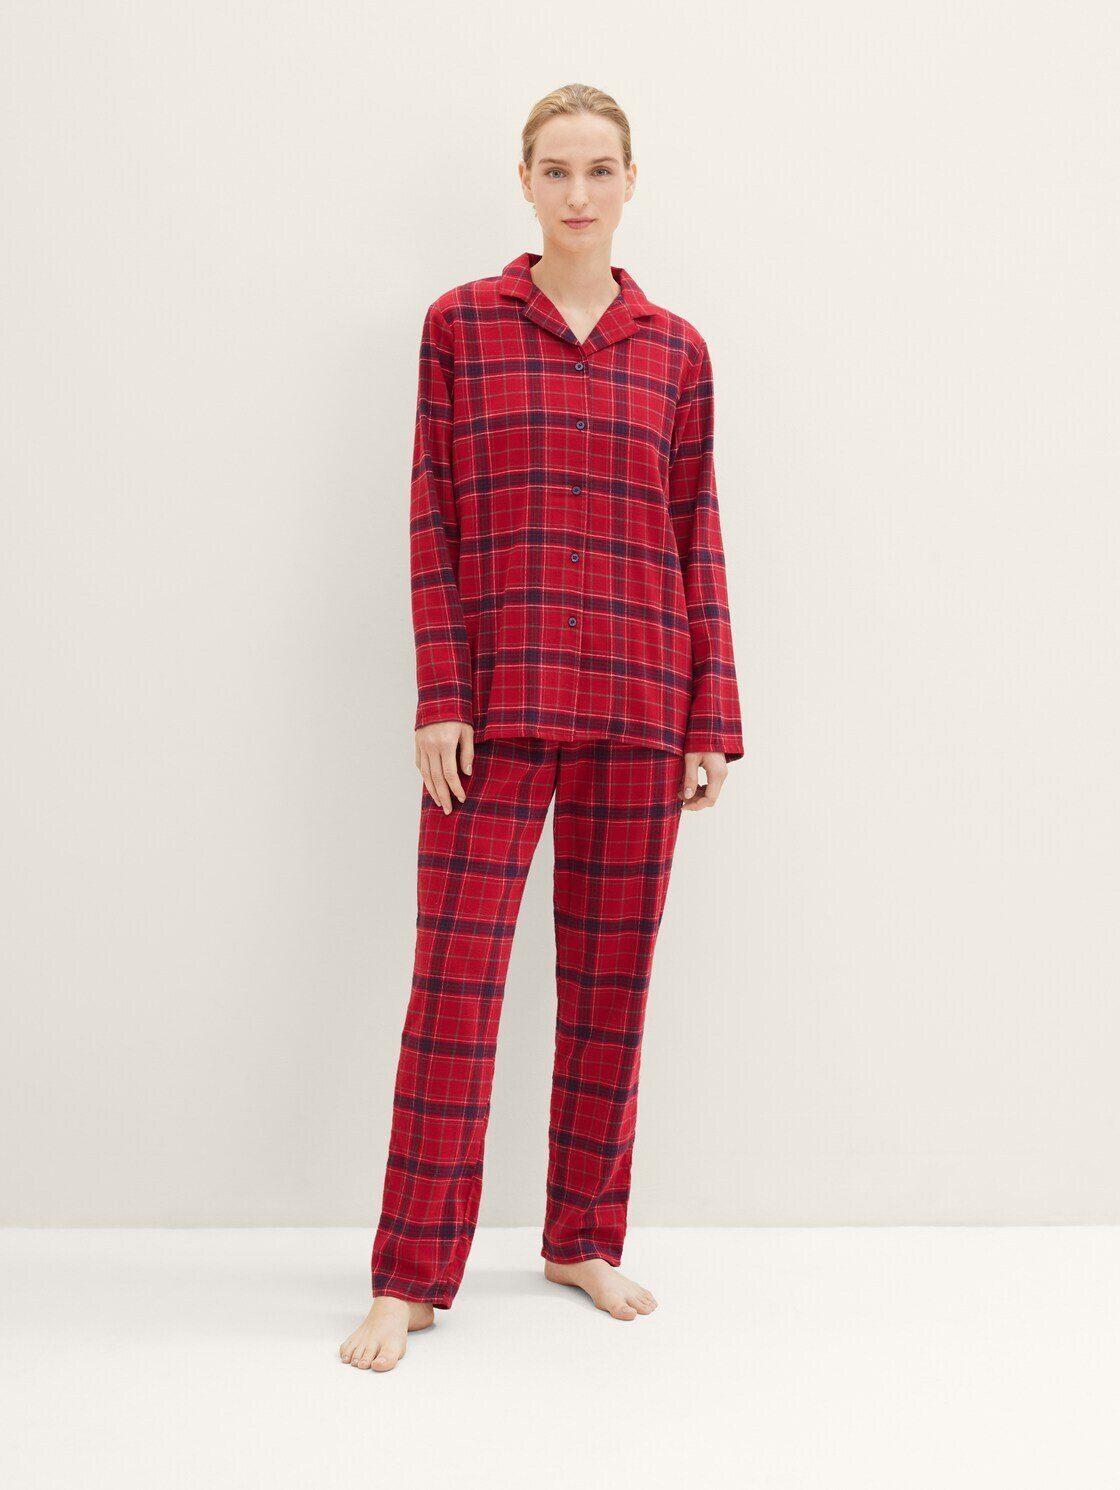 TOM TAILOR Schlafhose Pyjama mit Karomuster